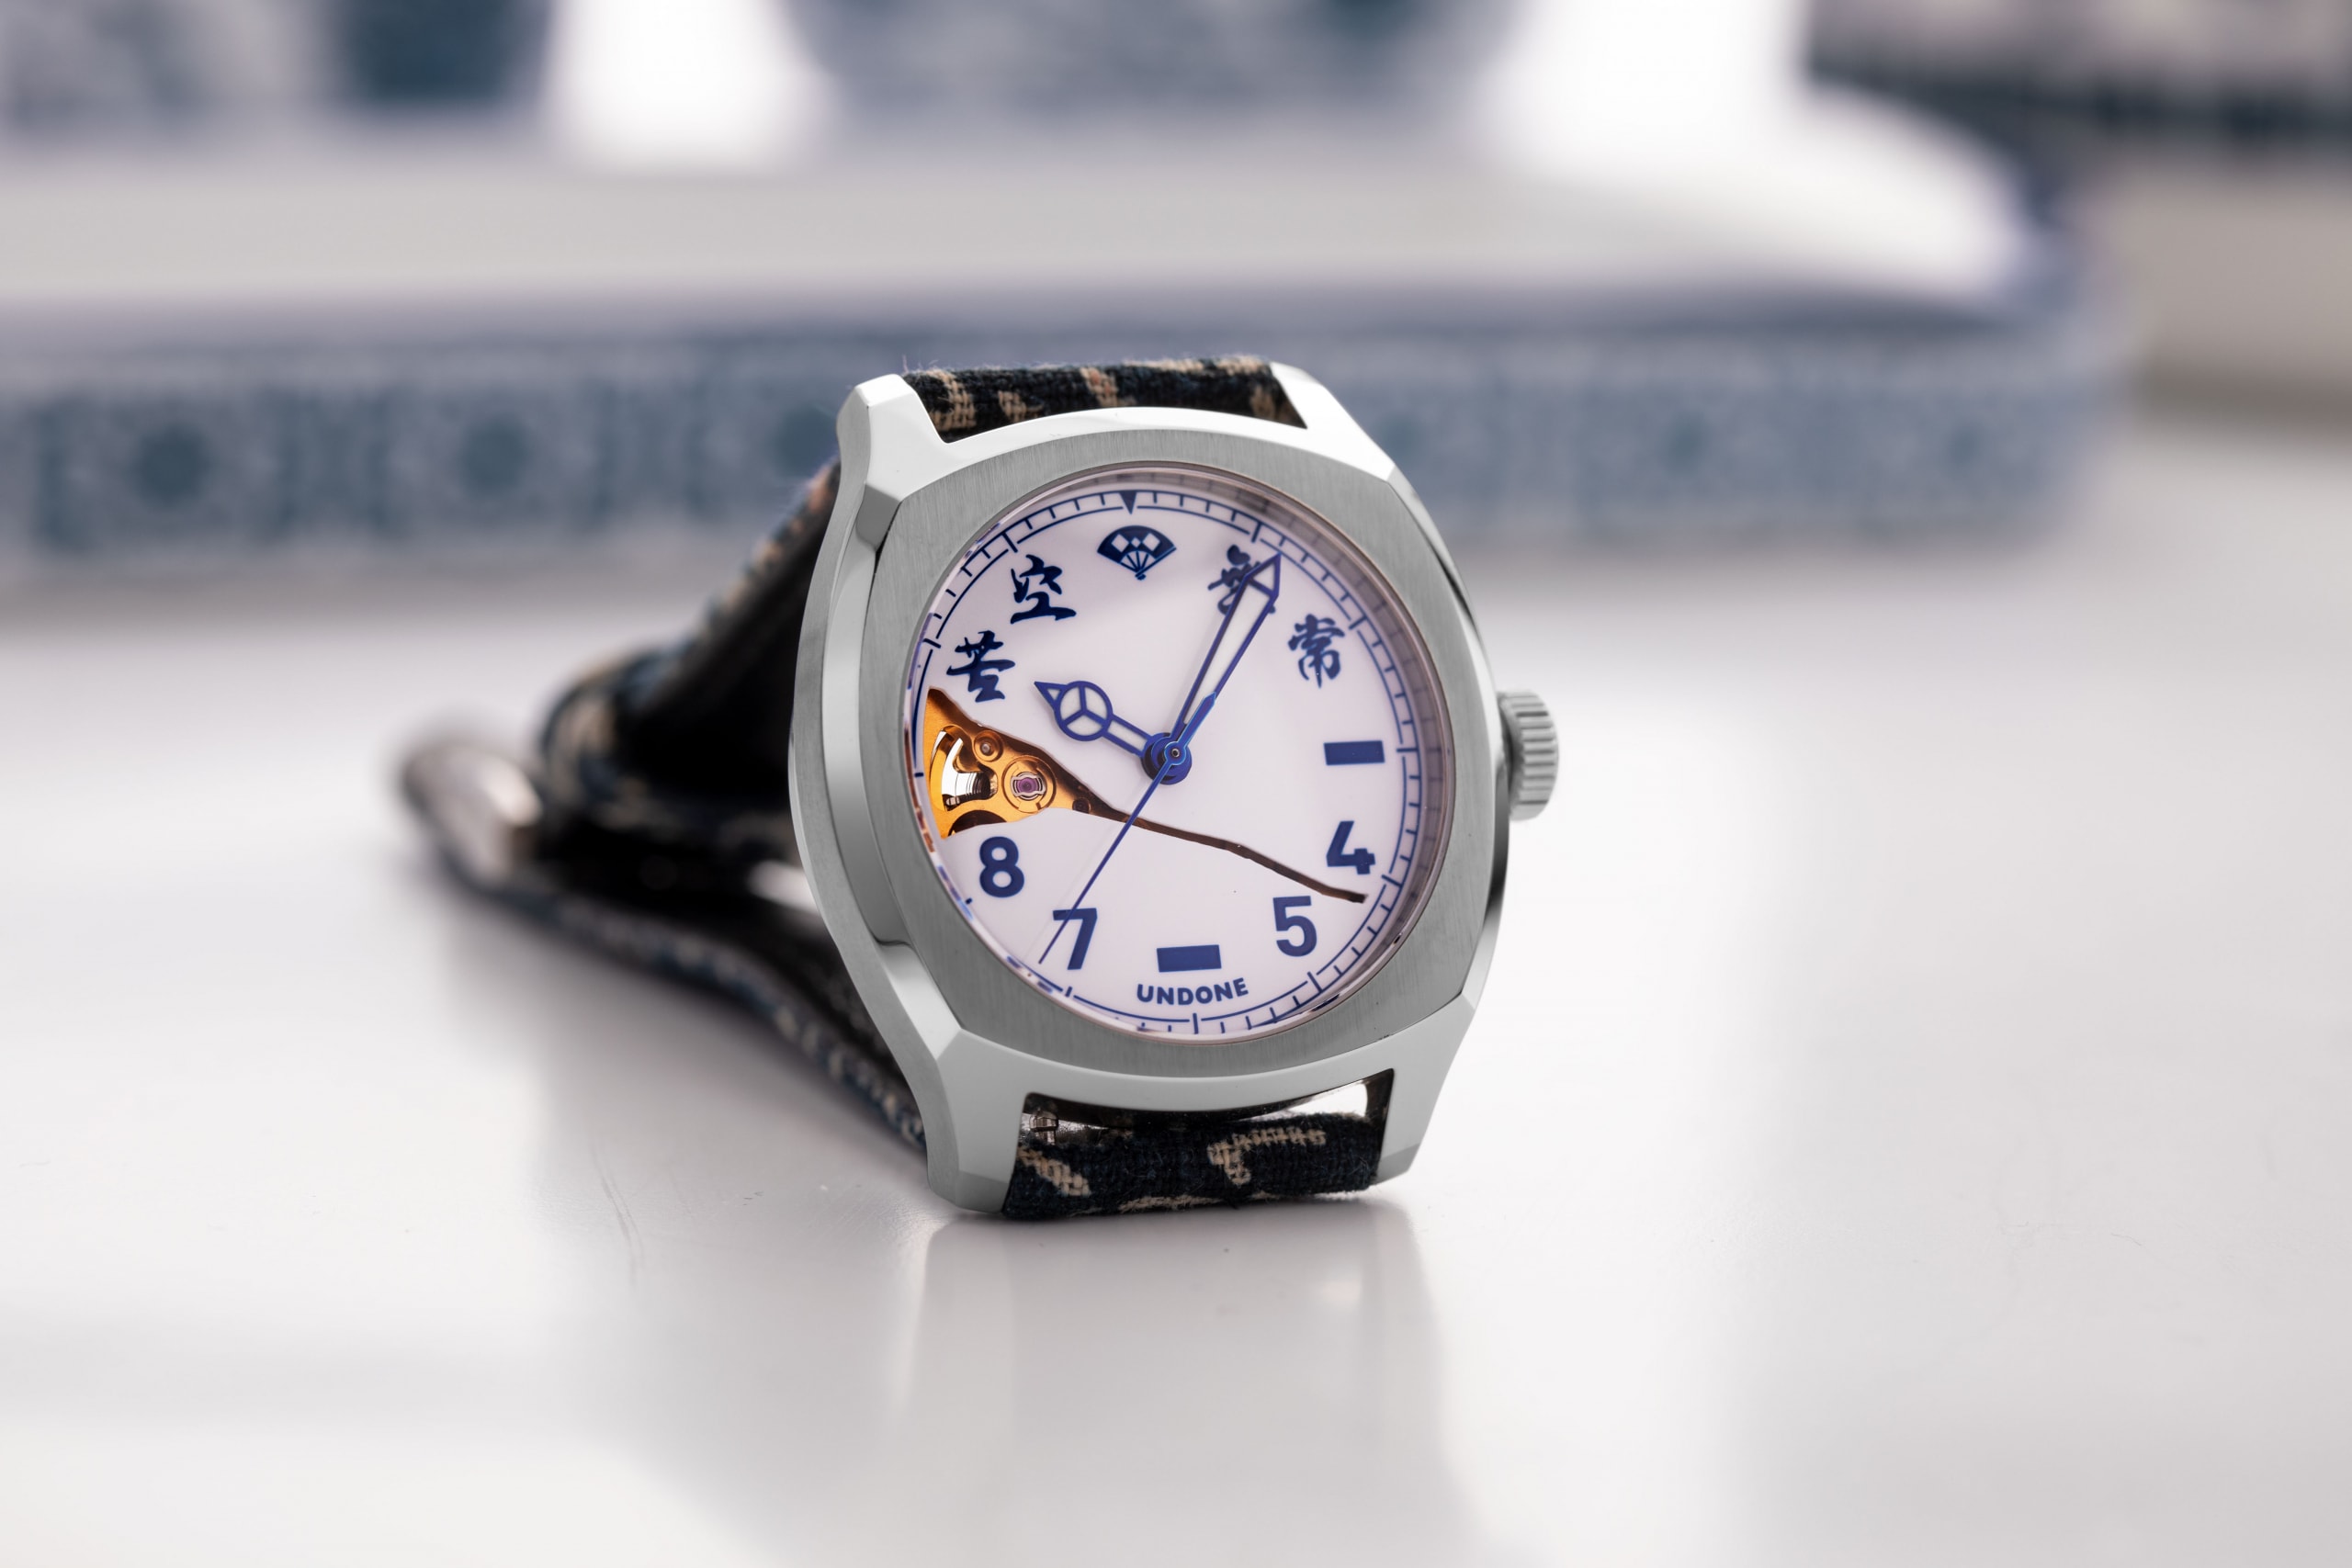 UNDONE 再度攜手 Simple Union 打造聯名限定腕錶